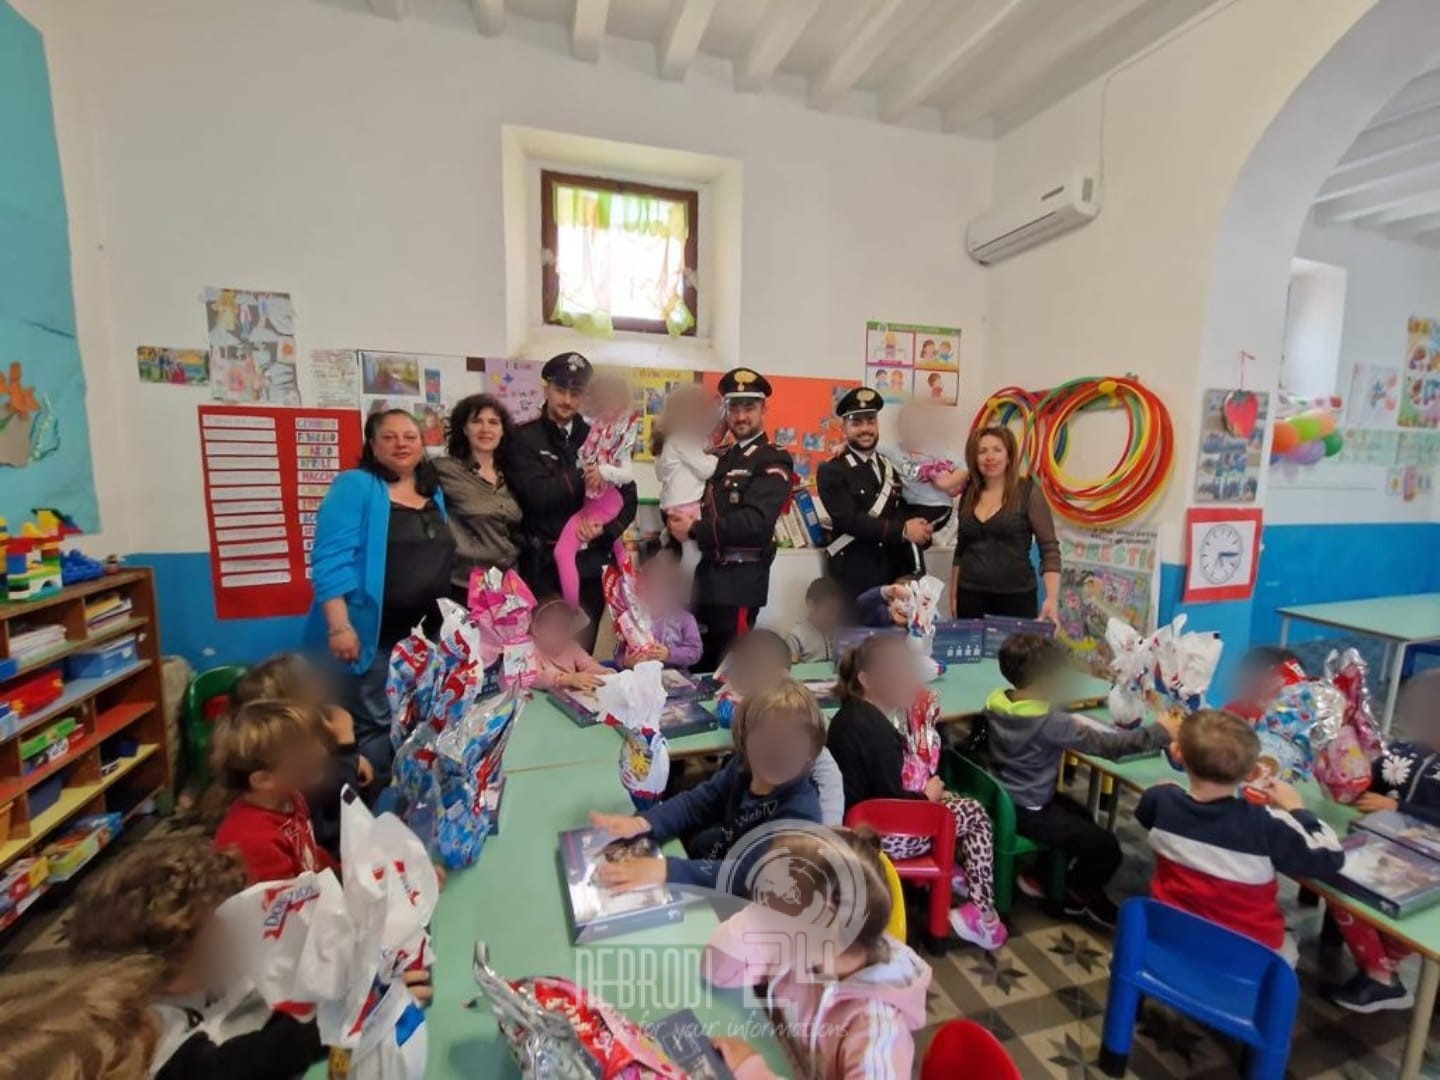 Stromboli (Isole Eolie) – I carabinieri donano regali e uova di Pasqua ai bambini della scuola